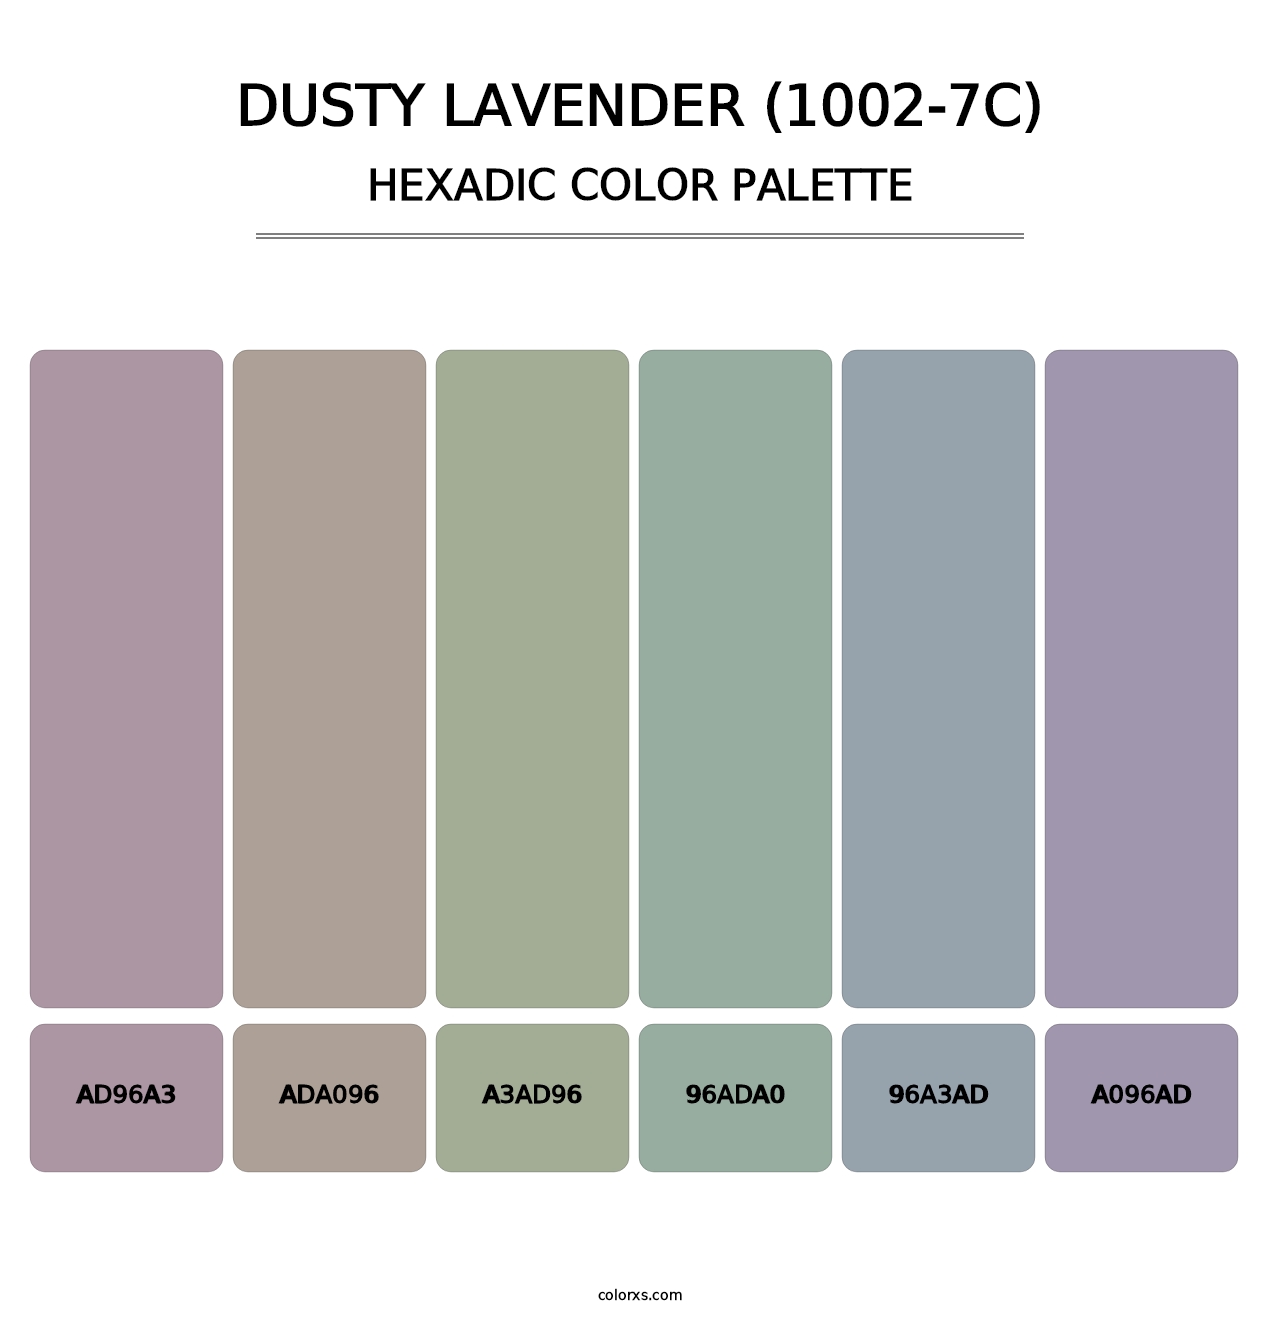 Dusty Lavender (1002-7C) - Hexadic Color Palette